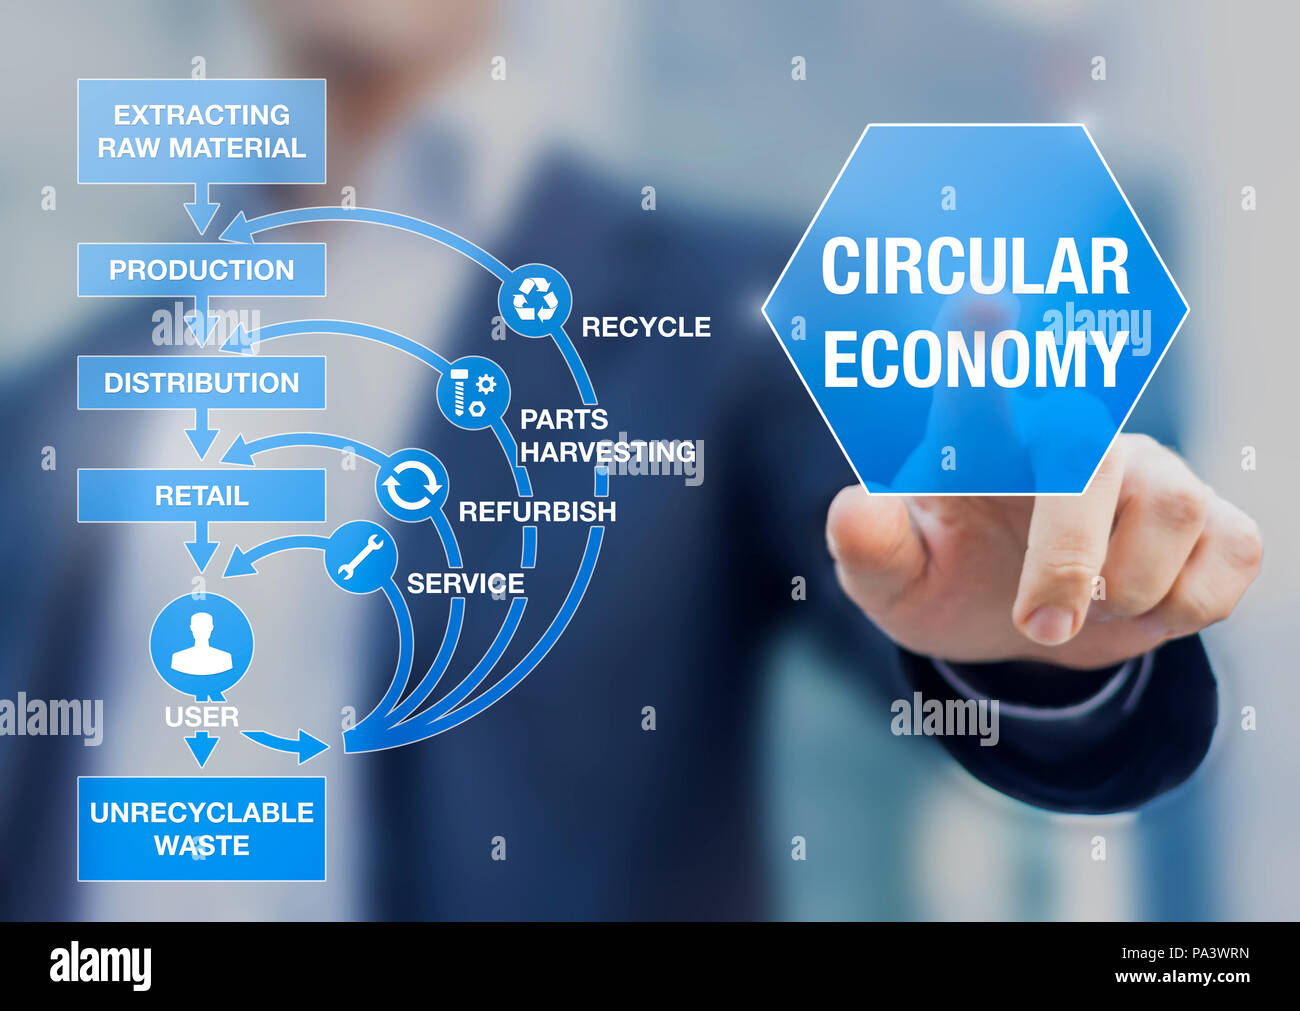 Économie circulaire modèle d'affaires pour le développement durable, la réduction des déchets et ressources naturelles, recycler, réutiliser, remettre en état, améliorer p Banque D'Images